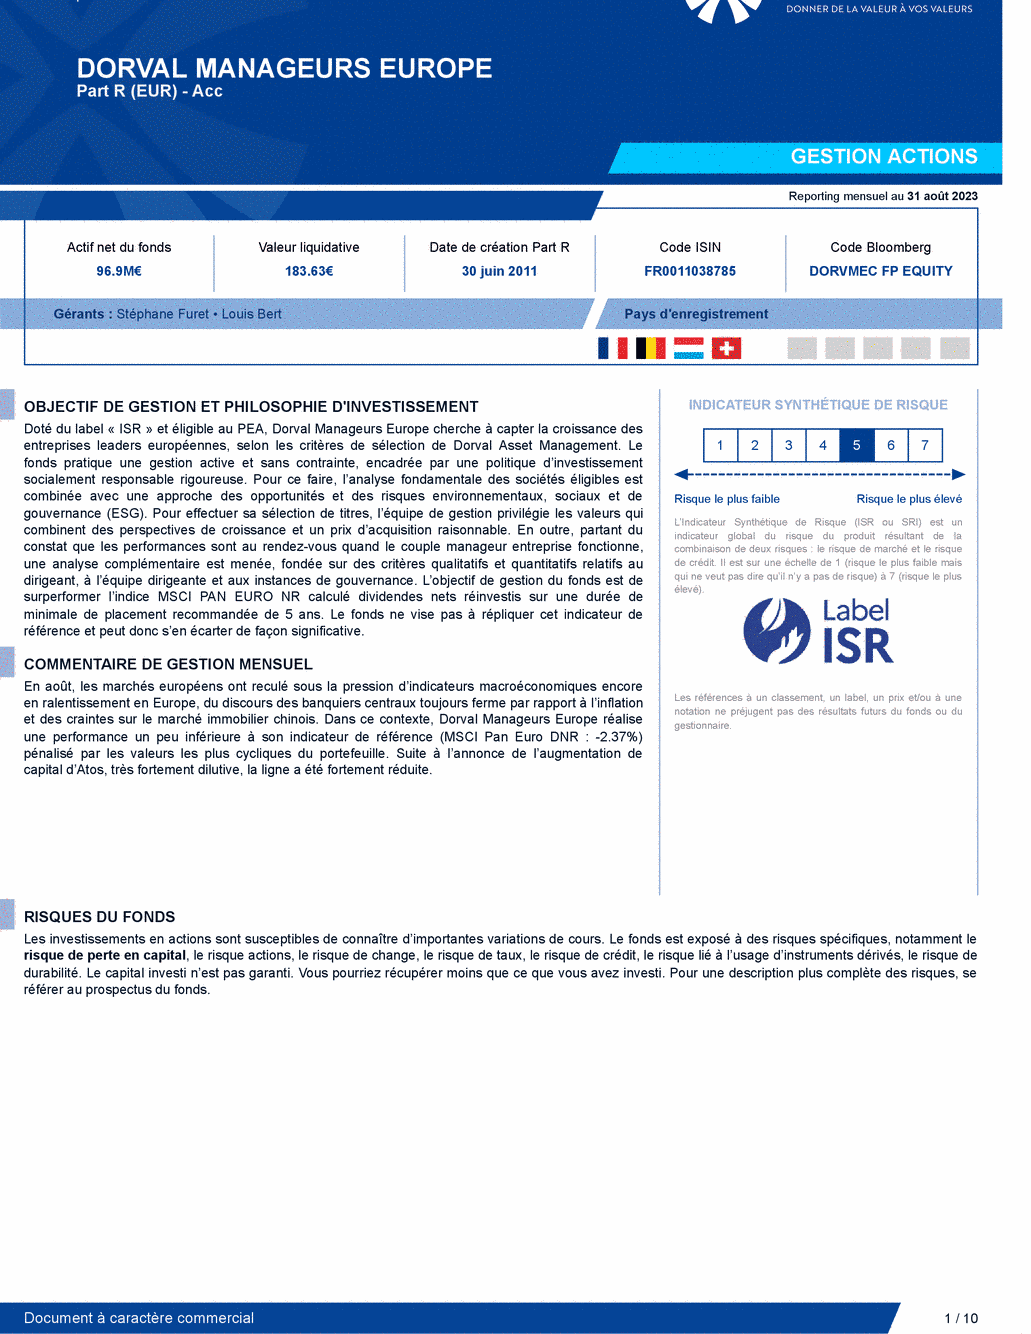 Reporting DORVAL MANAGEURS EUROPE - 31/08/2023 - Français